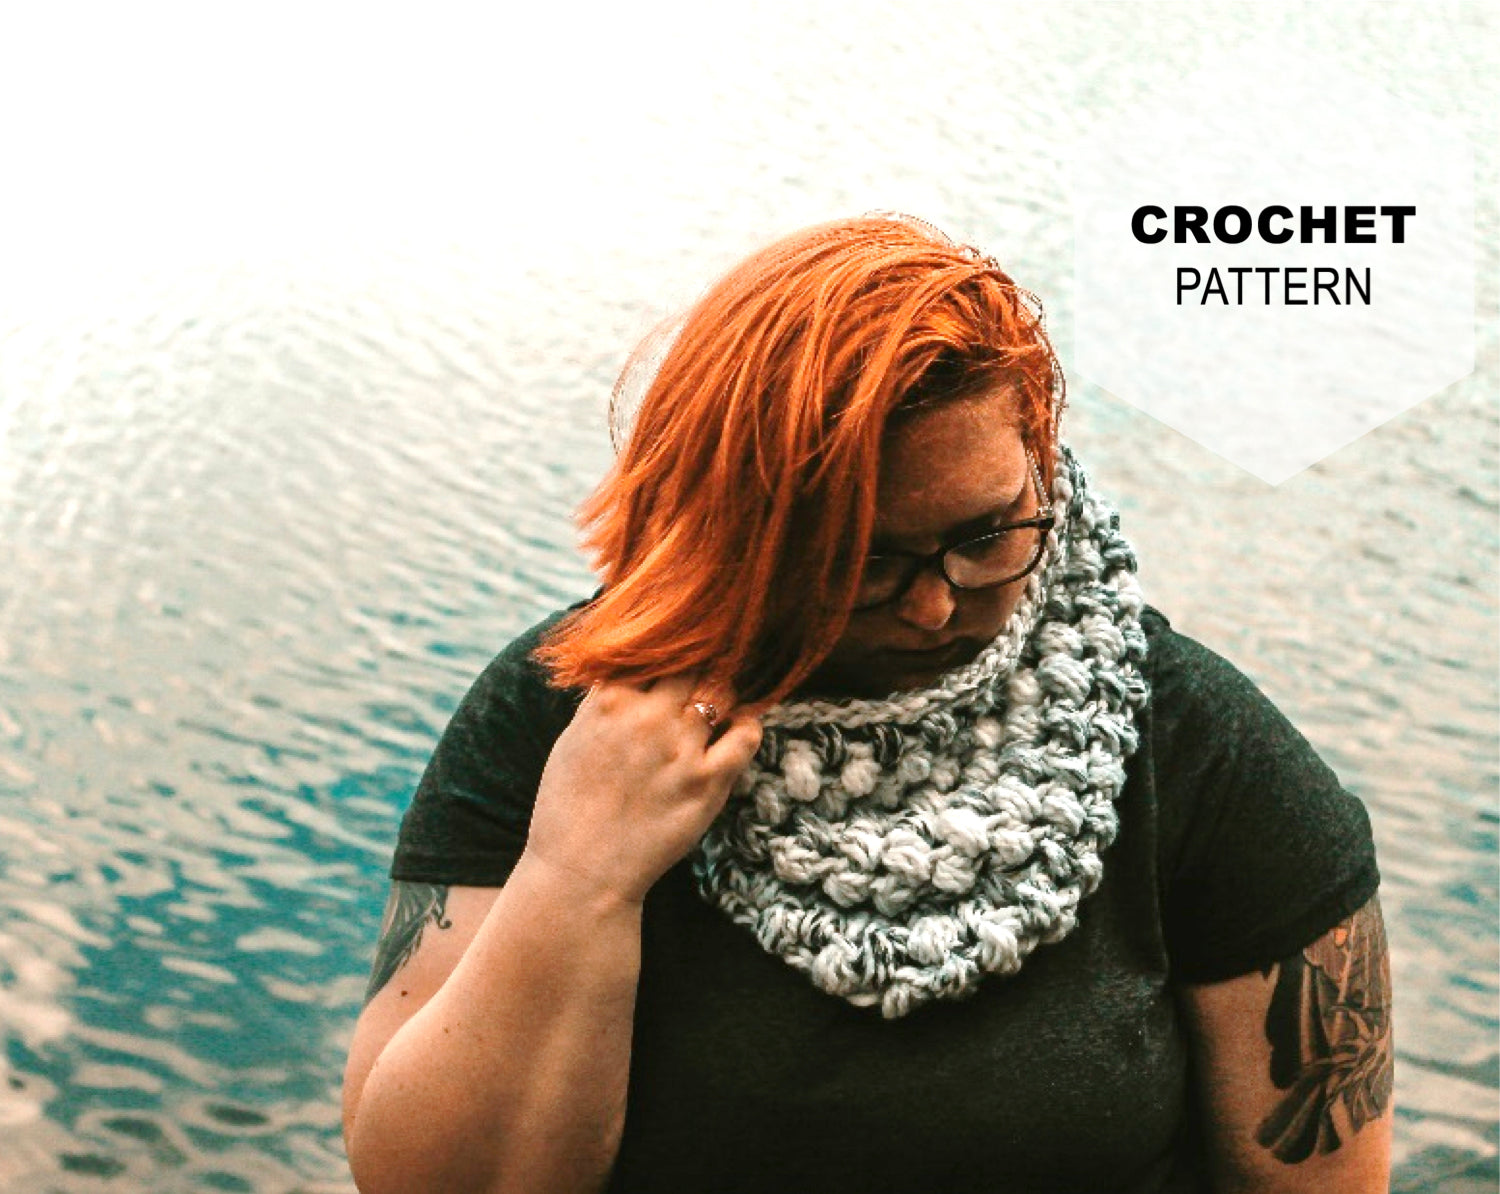 11.5mm – Crochet Australia